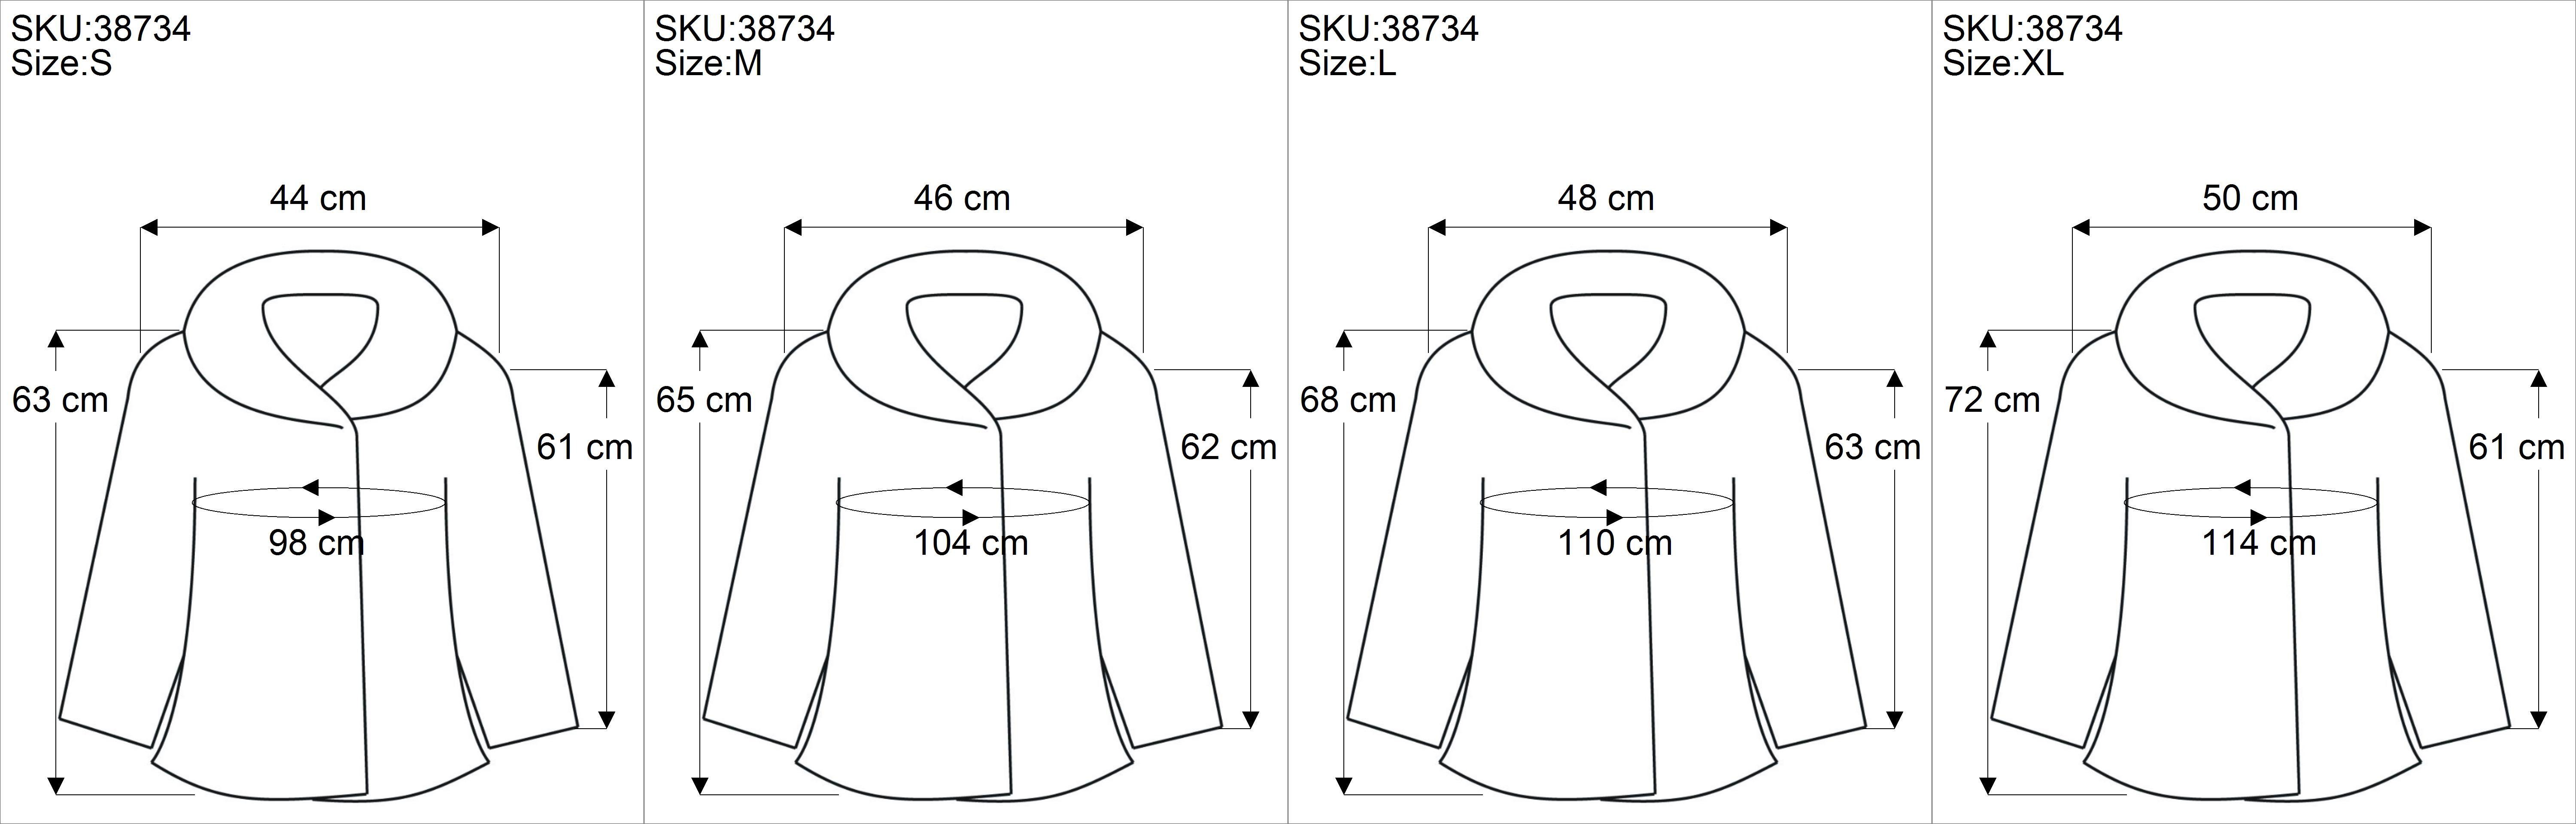 Guru-Shop Langjacke Regenbogenjacke, Bekleidung Jacke - alternative mit Zipfelkapuze schwarz